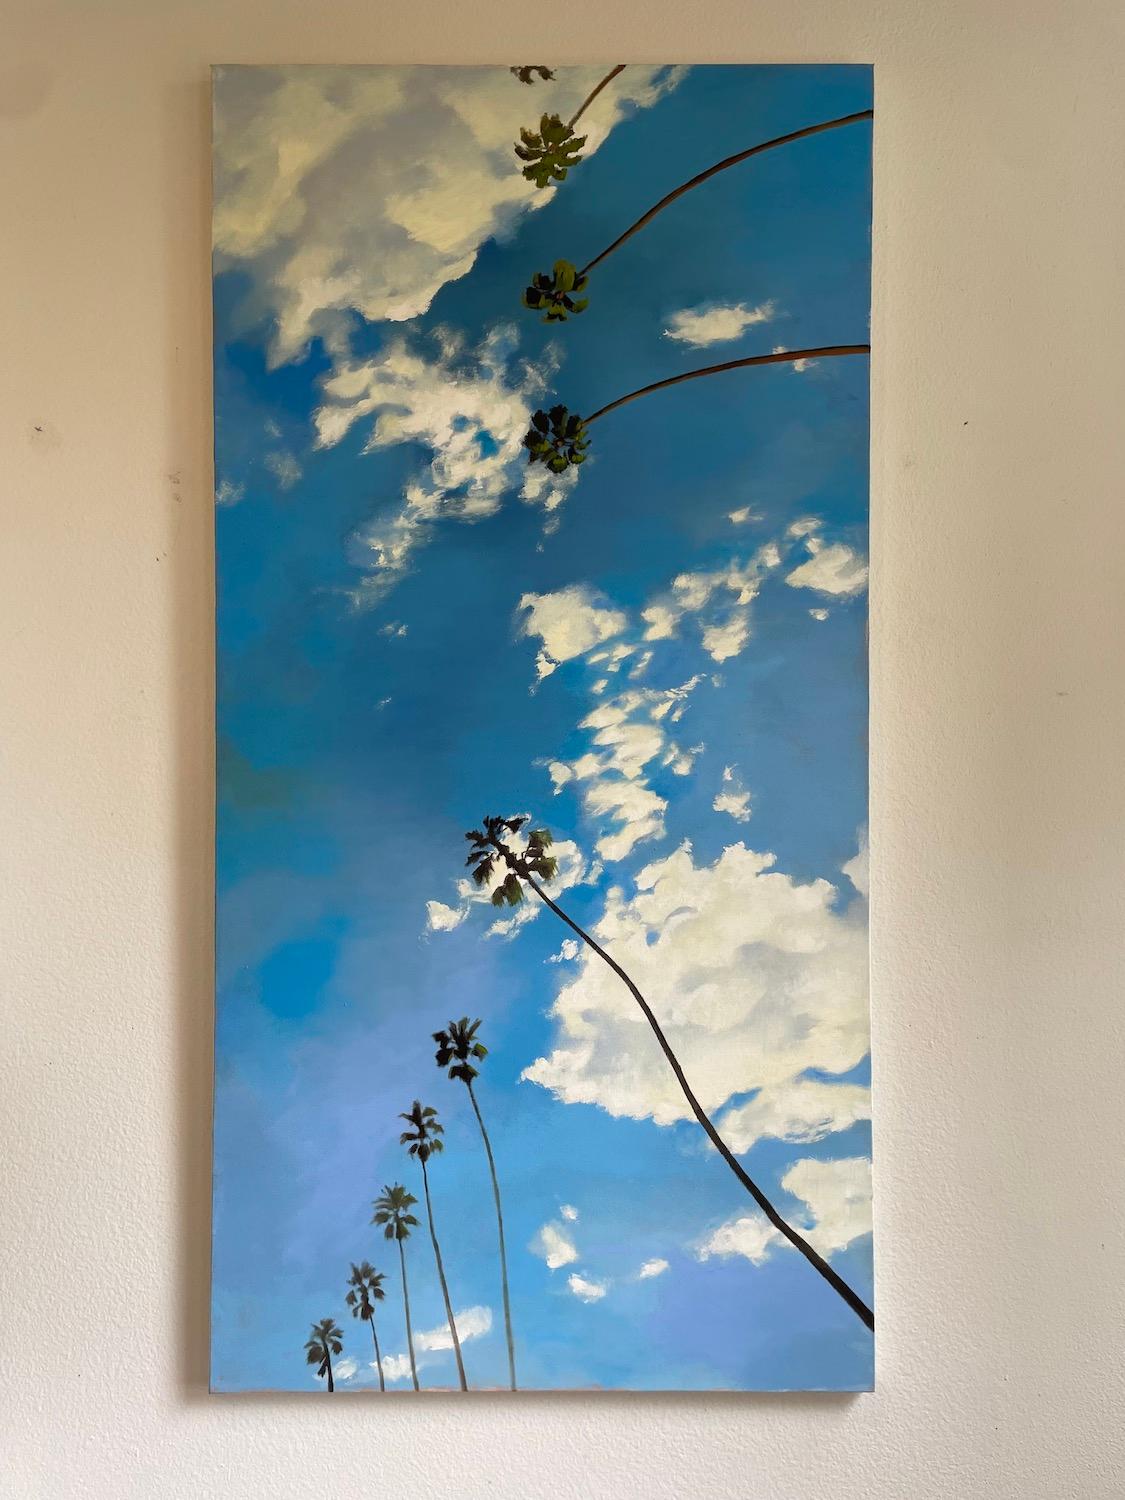 <p>Kommentare des Künstlers<br>Der Künstler Jesse Aldana präsentiert eine Himmelslandschaft aus einem ebenerdigen Blickwinkel mit realistischen Details. Weiße Wolken, die in ihrer Eile abgeflacht sind, rasen über den Himmel. Die Palmen, die sich in